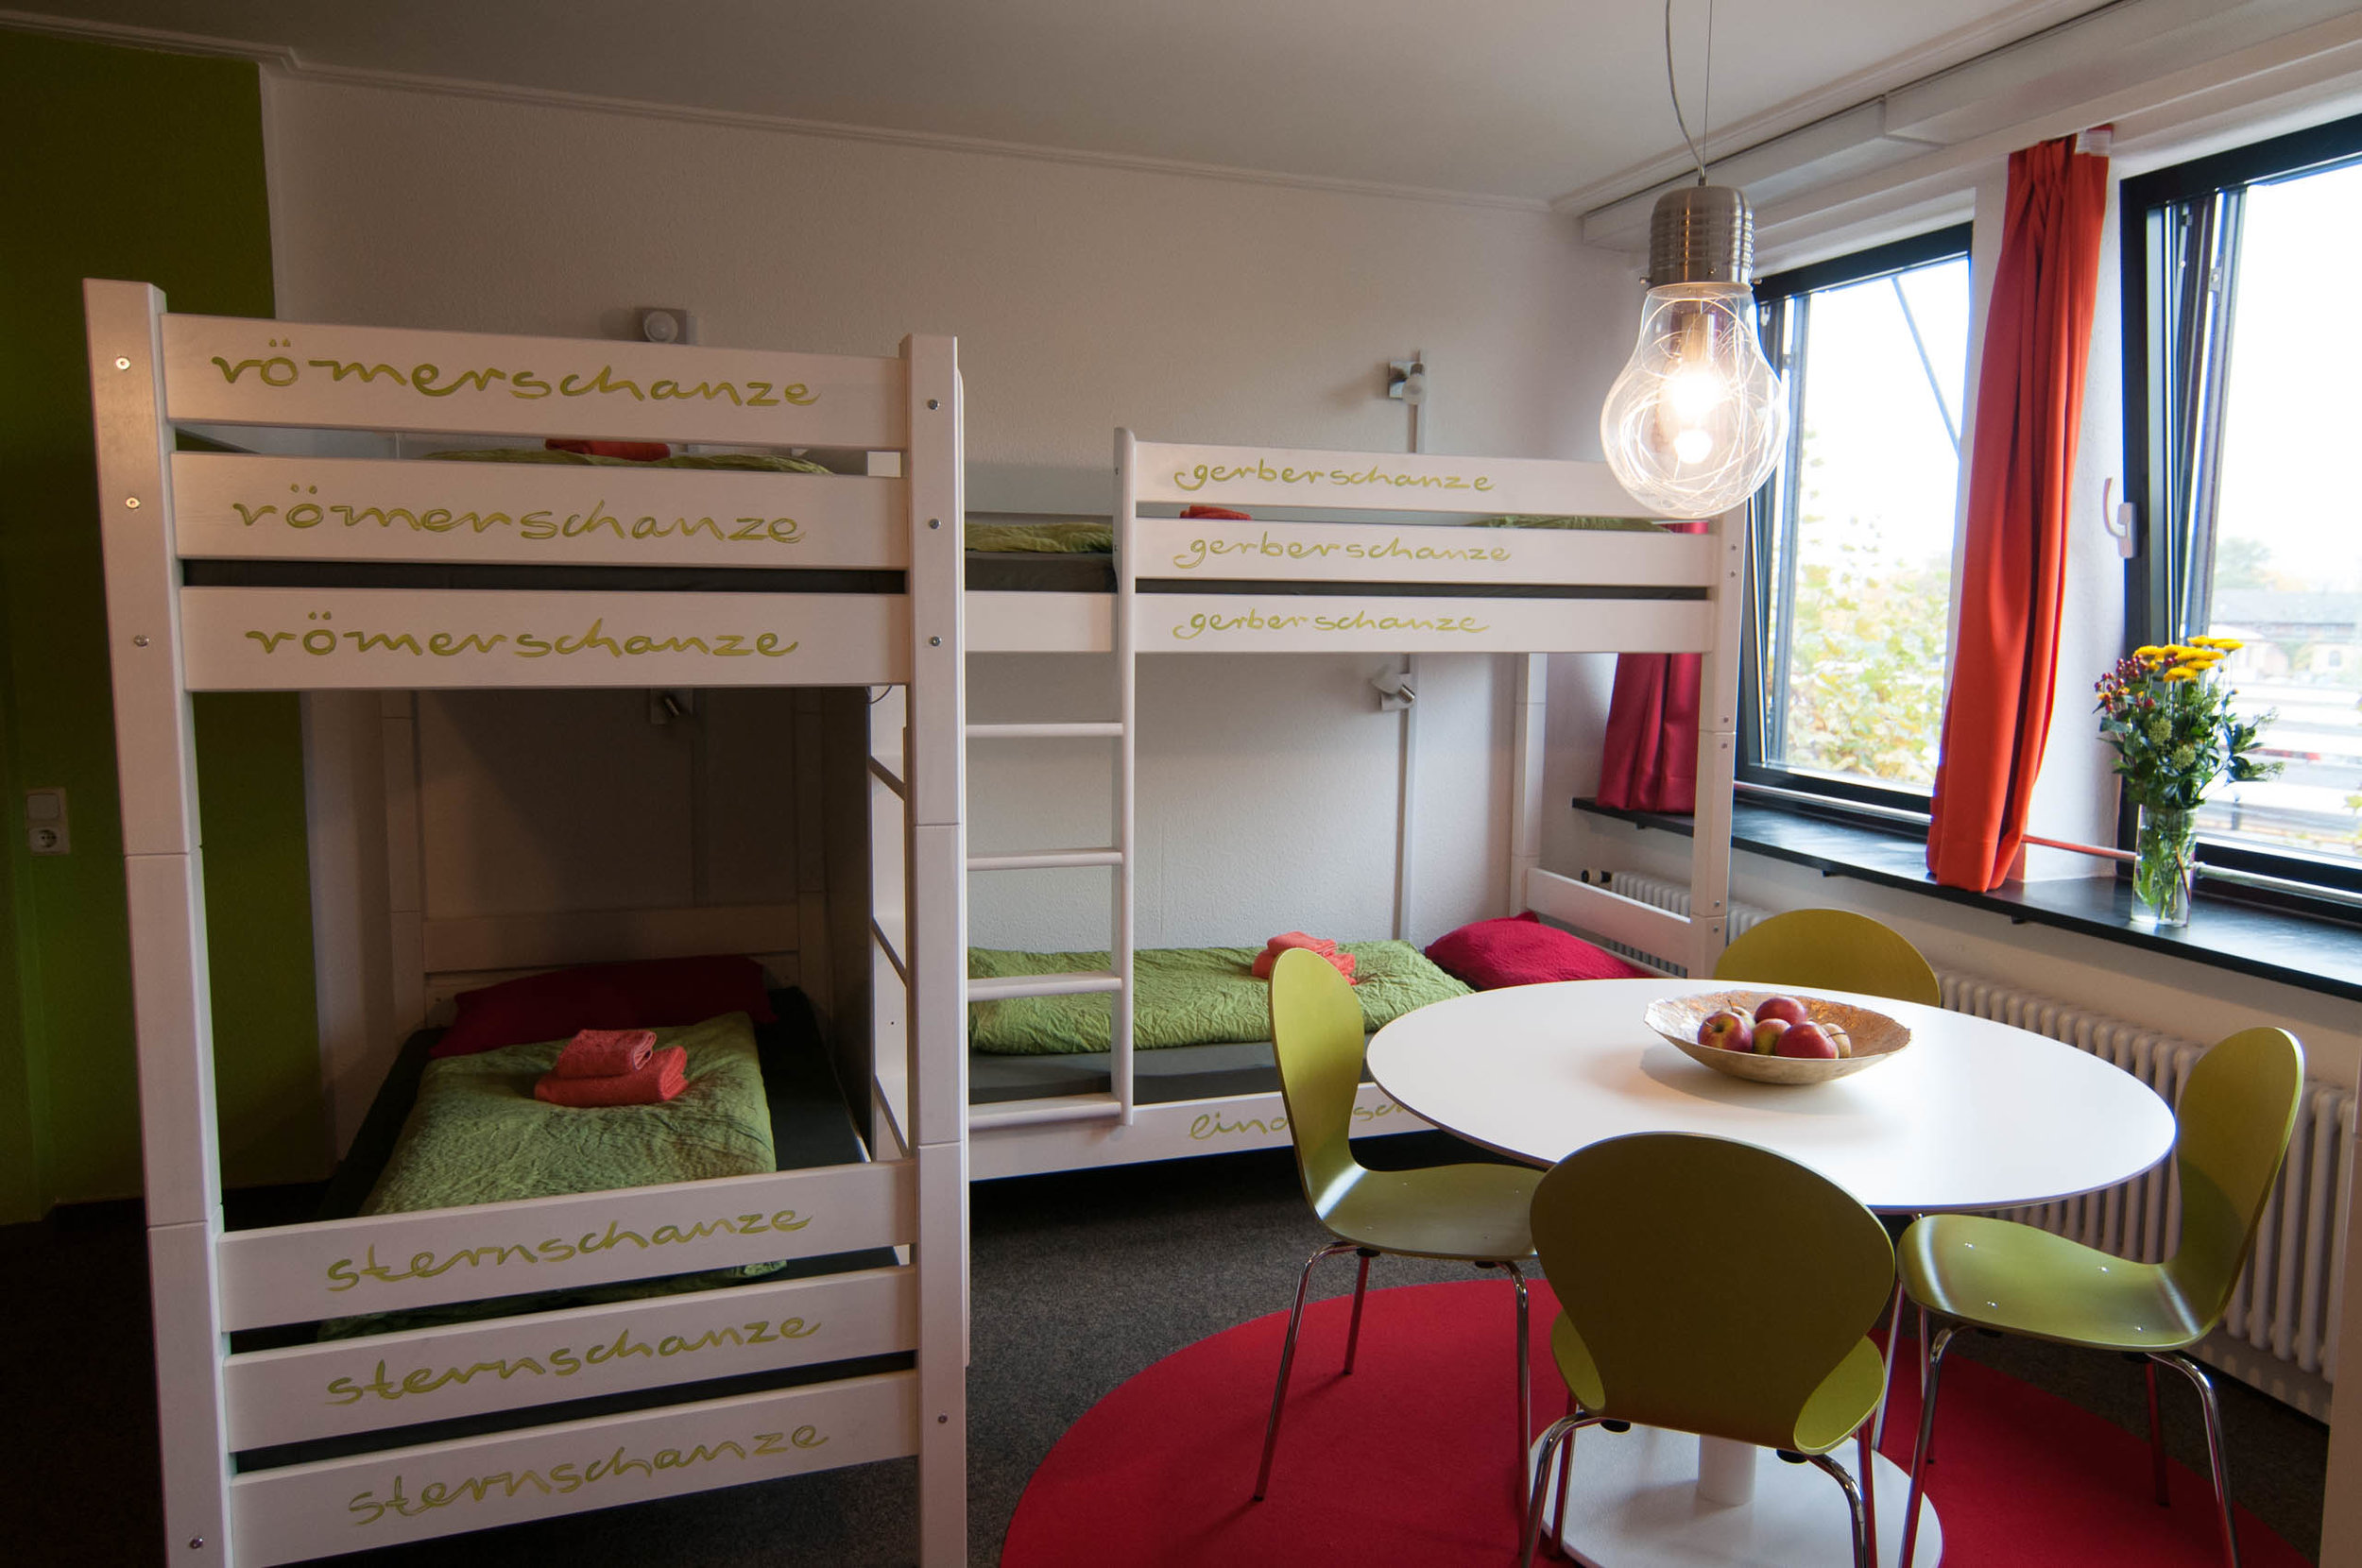 Insel Hostel Lindau Lake Constance - 8-bed-dorm - detail 4